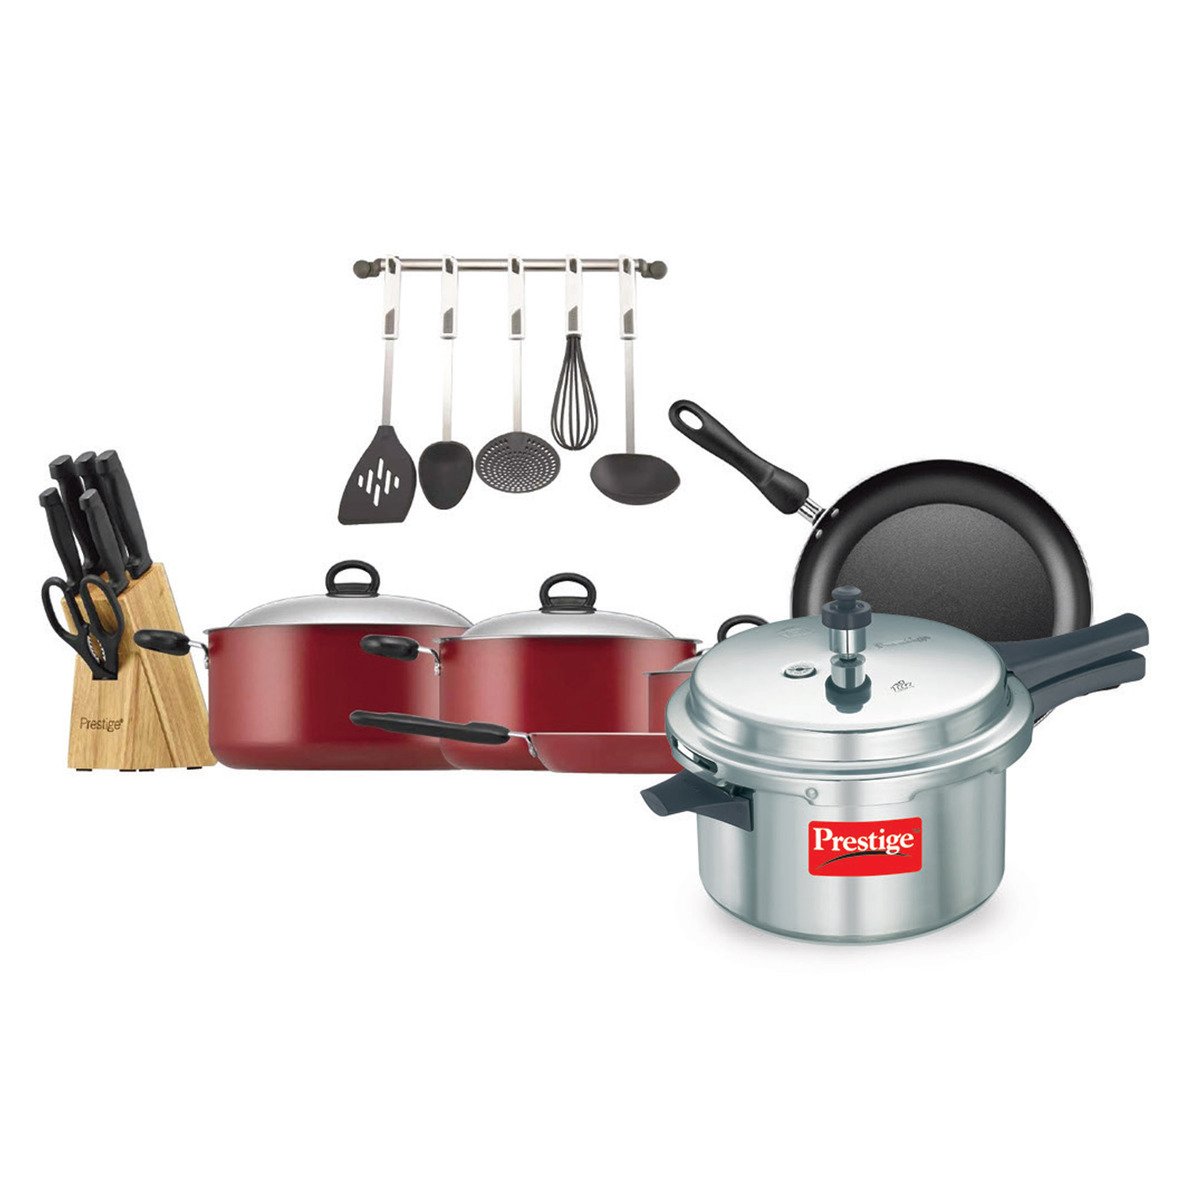 Prestige Cookware Set 22pcs 20965 With Pressure Cooker 4Ltr